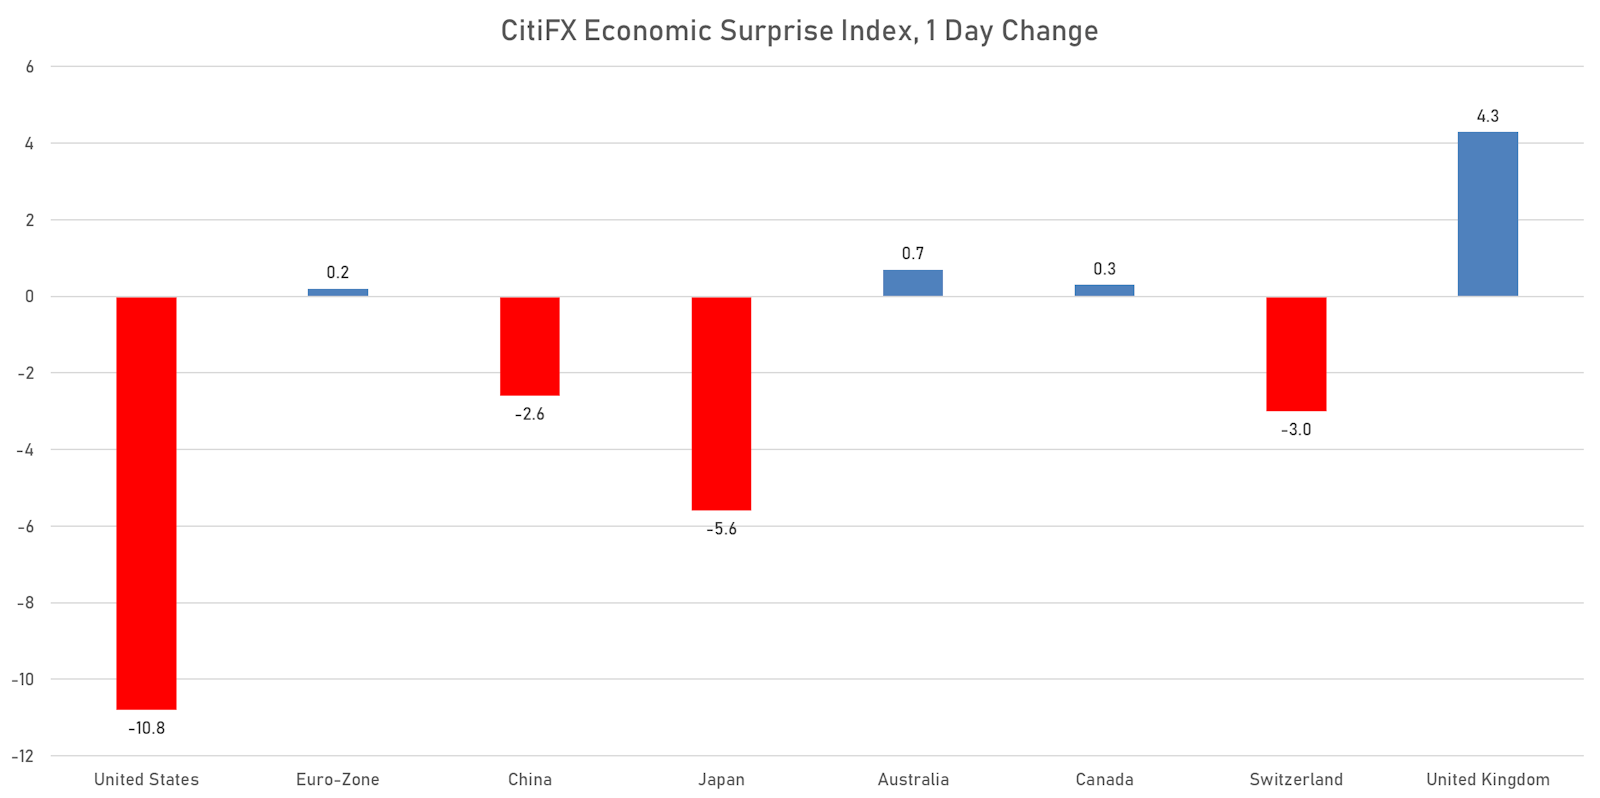 CitiFX Economic Surprise Indices | Sources: ϕpost chart, Refinitiv data